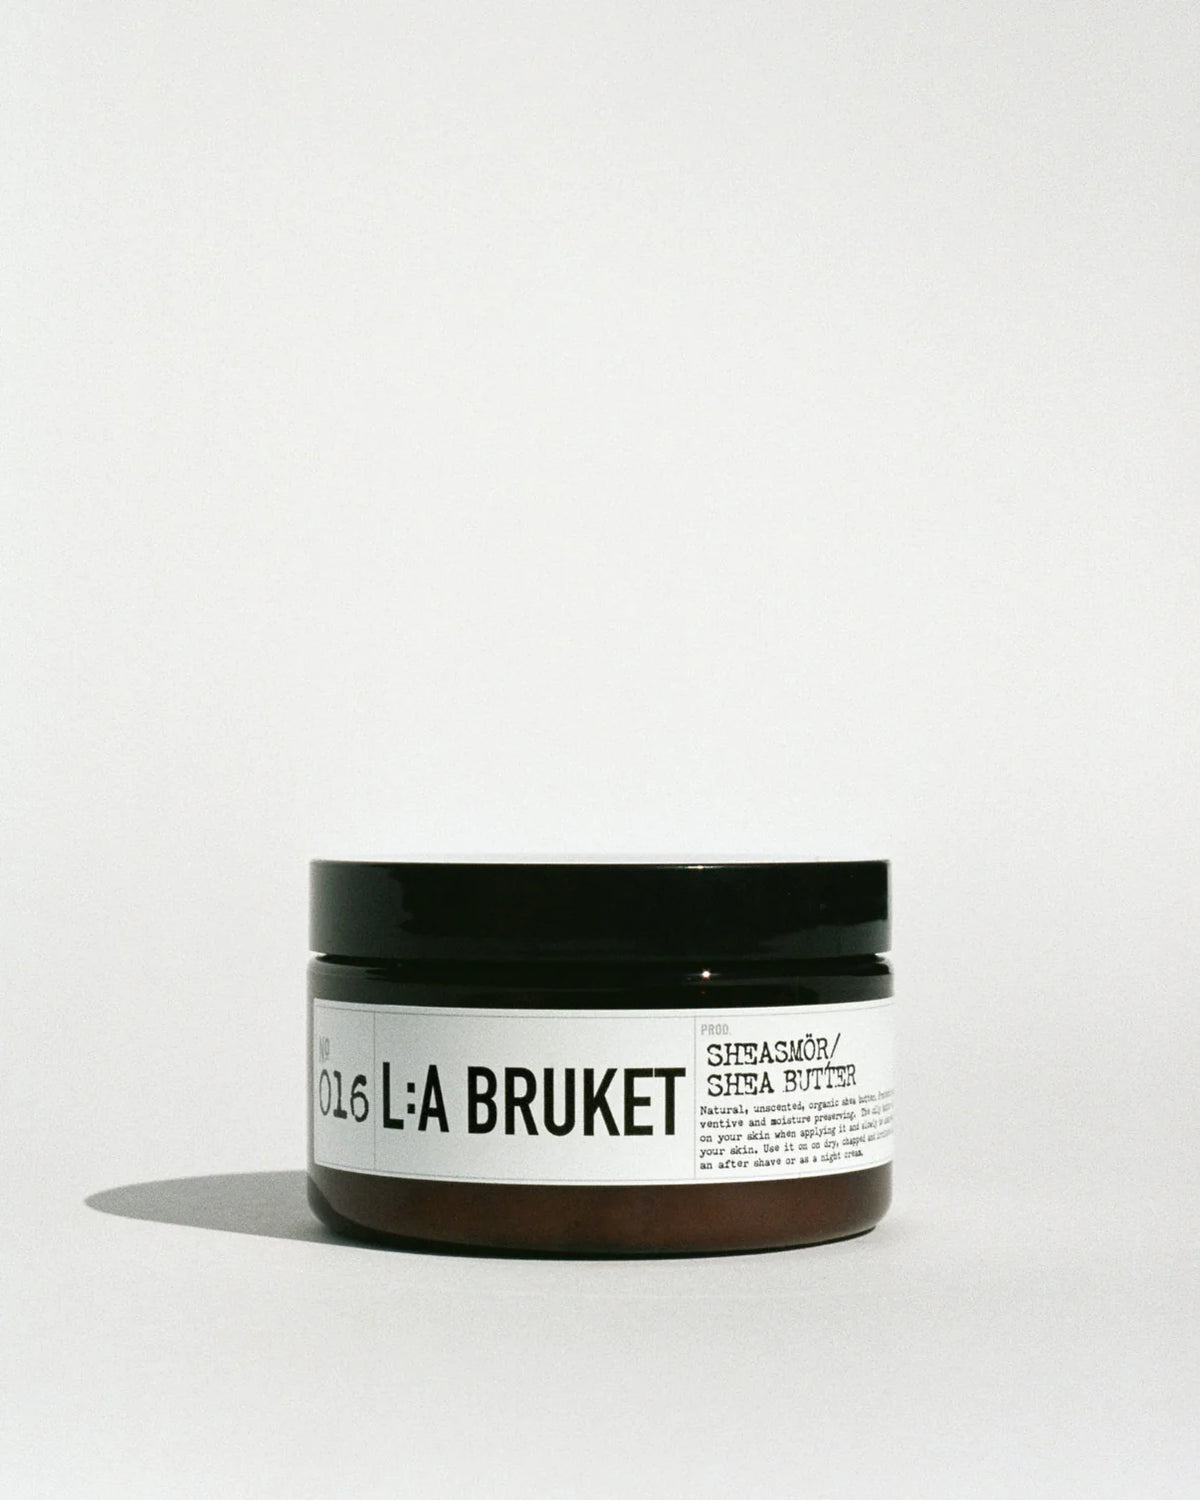 L:A Bruket Sheasmjör/ Shea butter - Natural